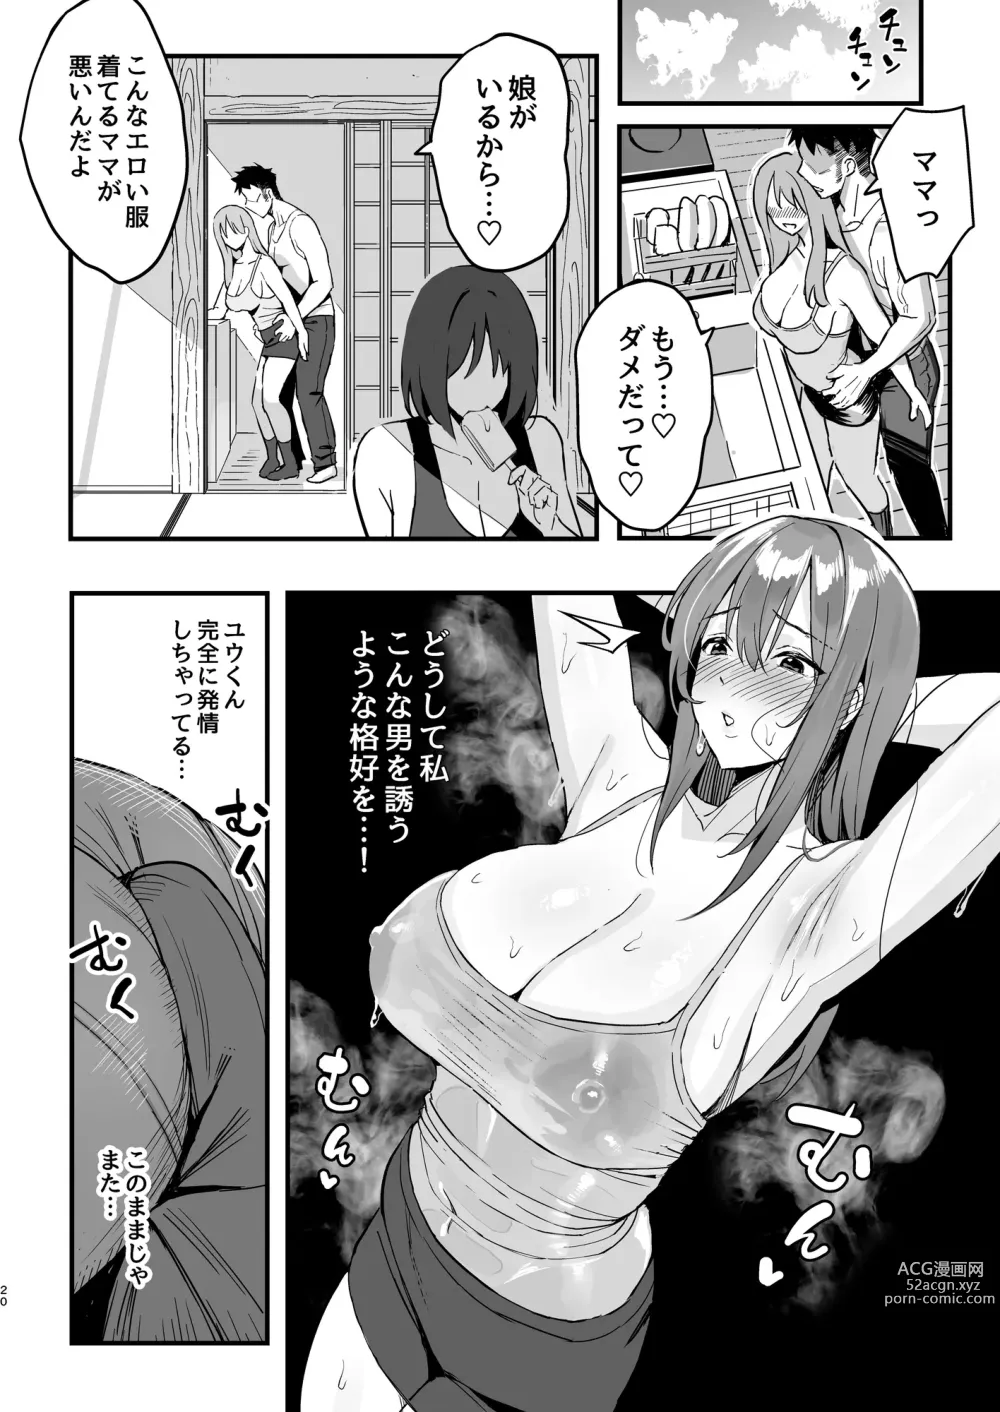 Page 19 of doujinshi Kanojo no mama wa mama katsu no mamadatta.